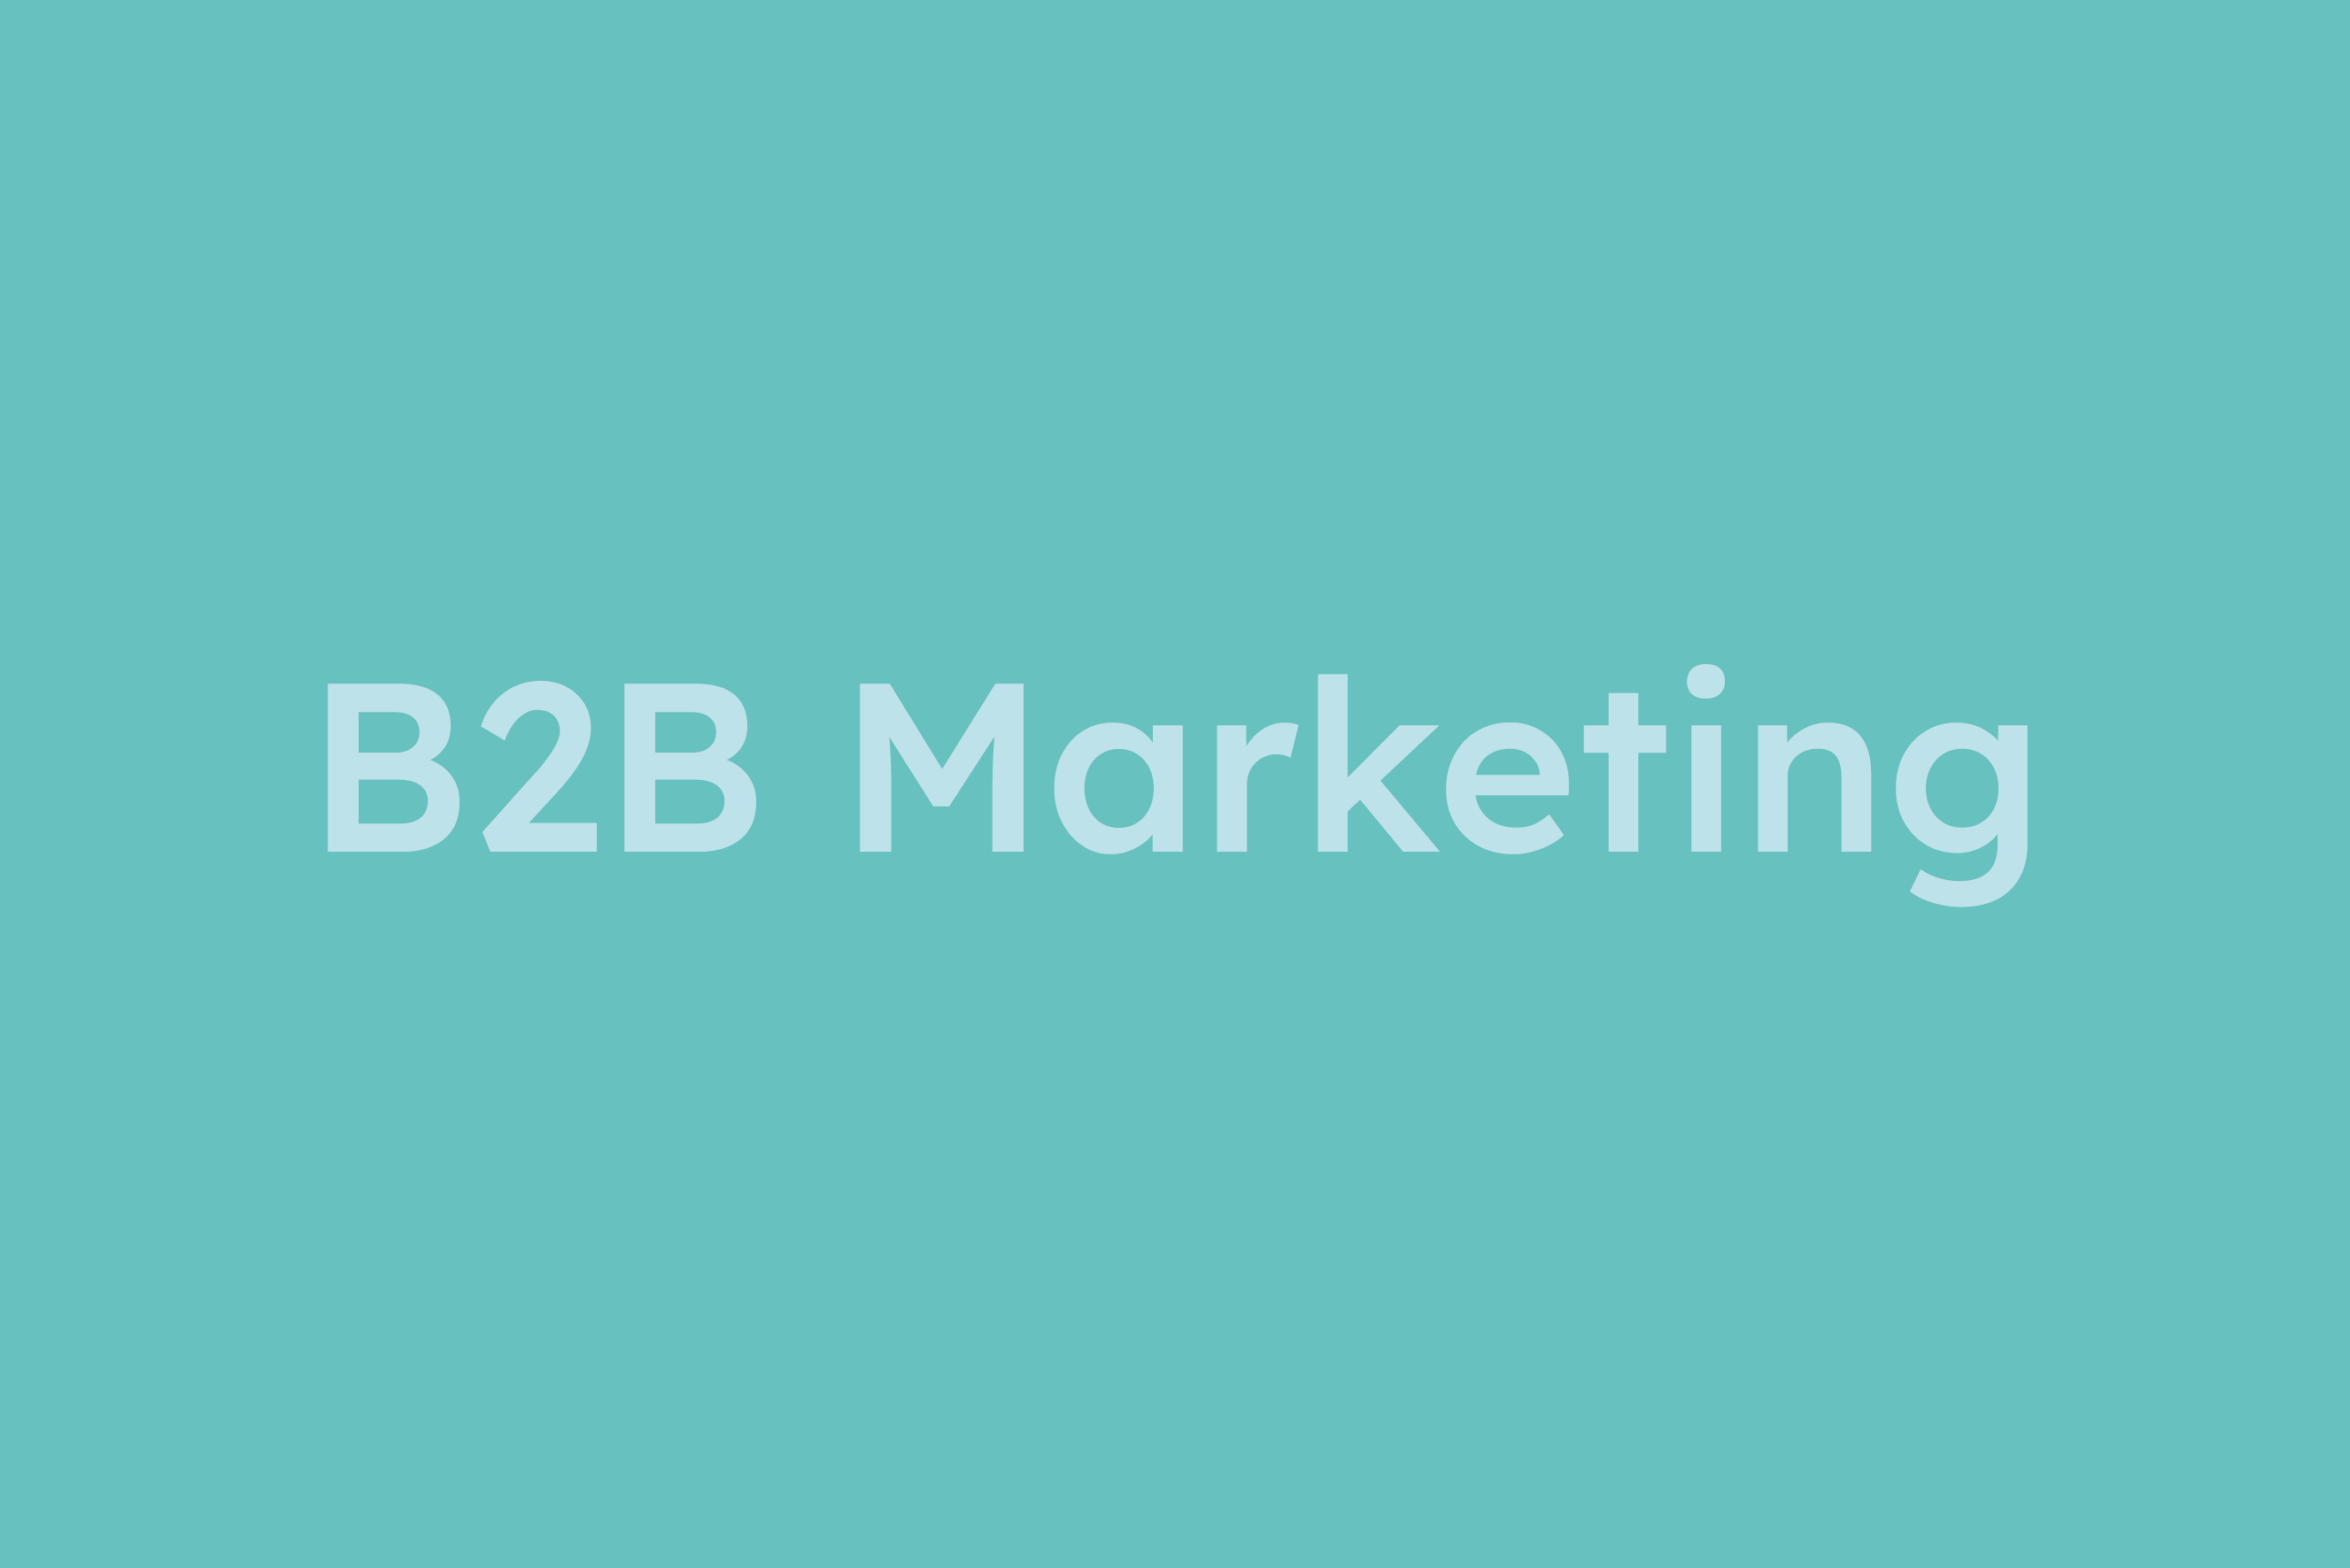 B2B Marketing erklärt im Glossar von Campaign